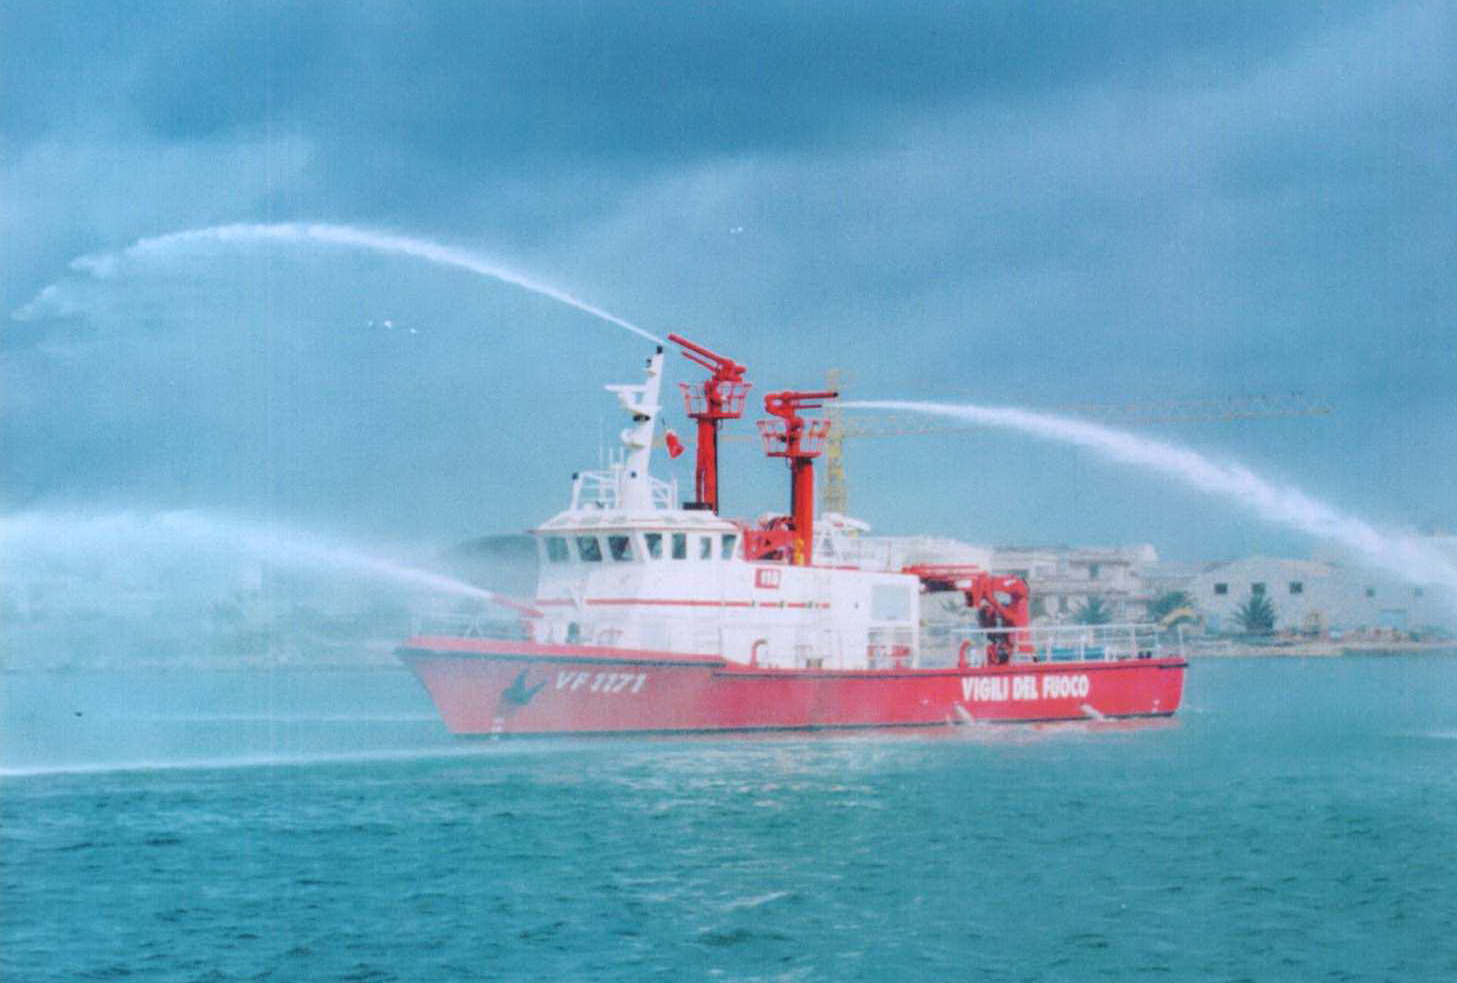 Fire-fighting-vessel, Spain